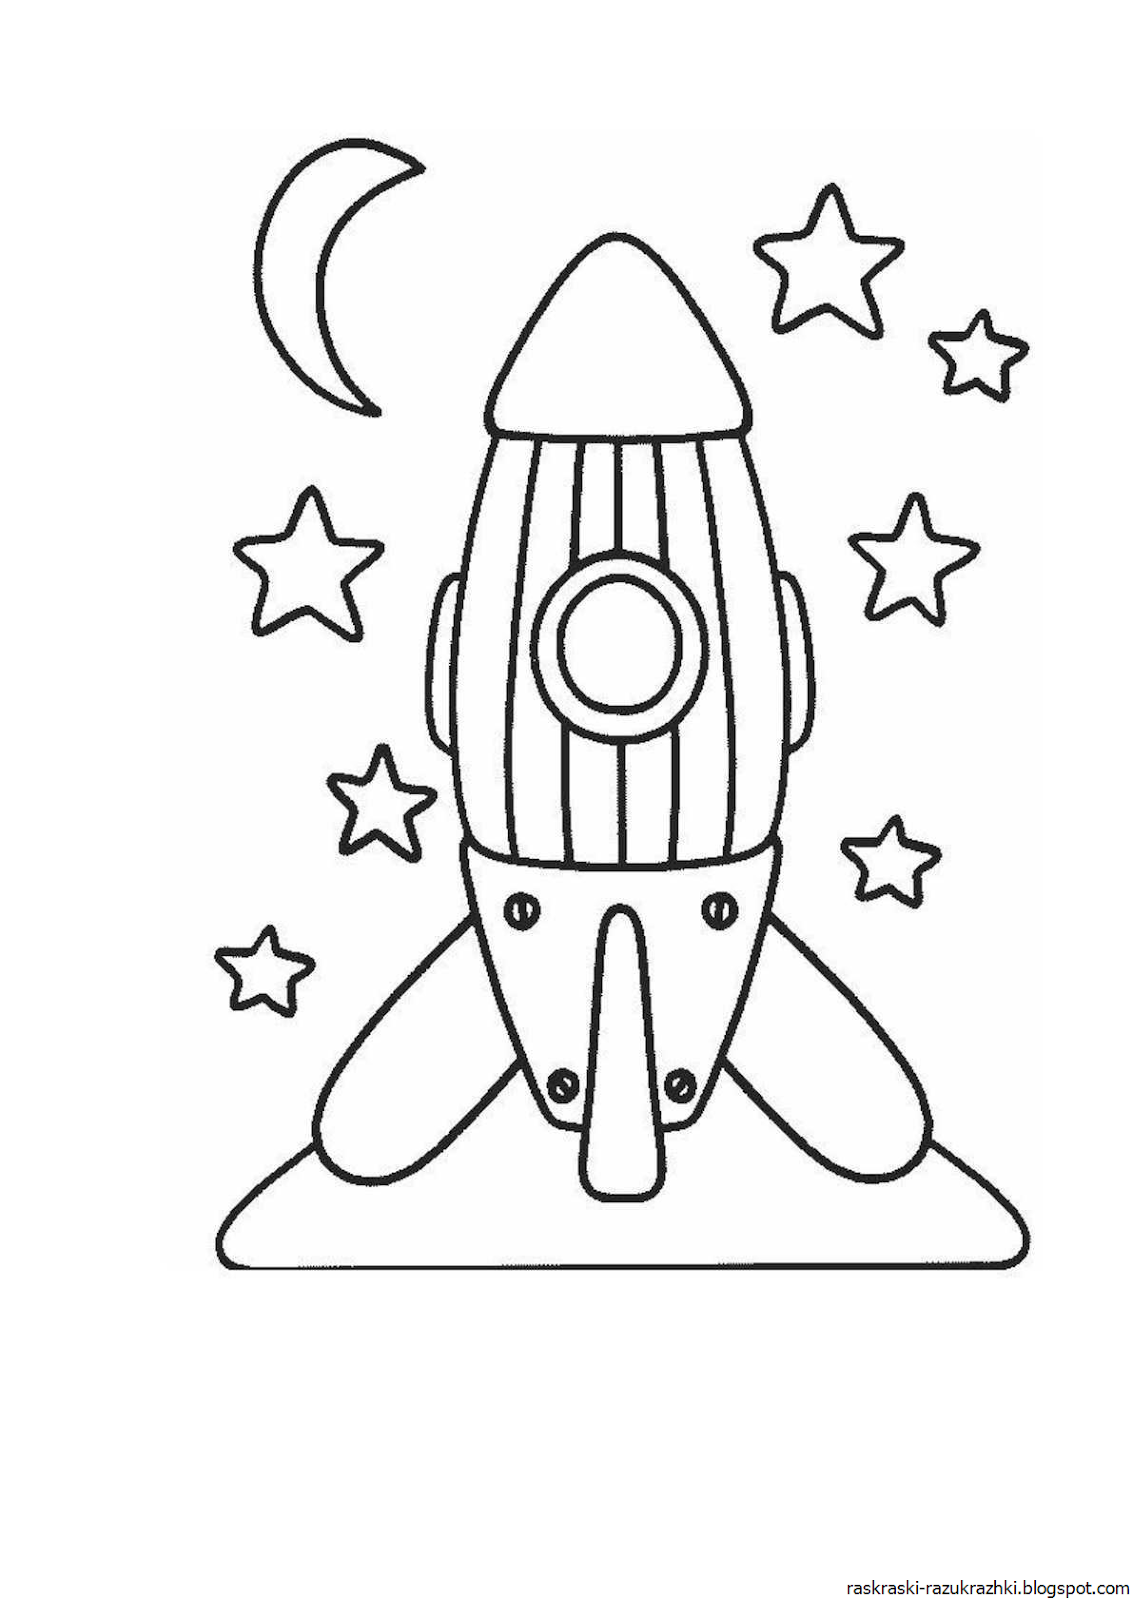 Раскраска ракета 2 3 года. Ракета раскраска. Ракета раскраска для детей. Космическая ракета раскраска для детей. Раскраски на тему космос.